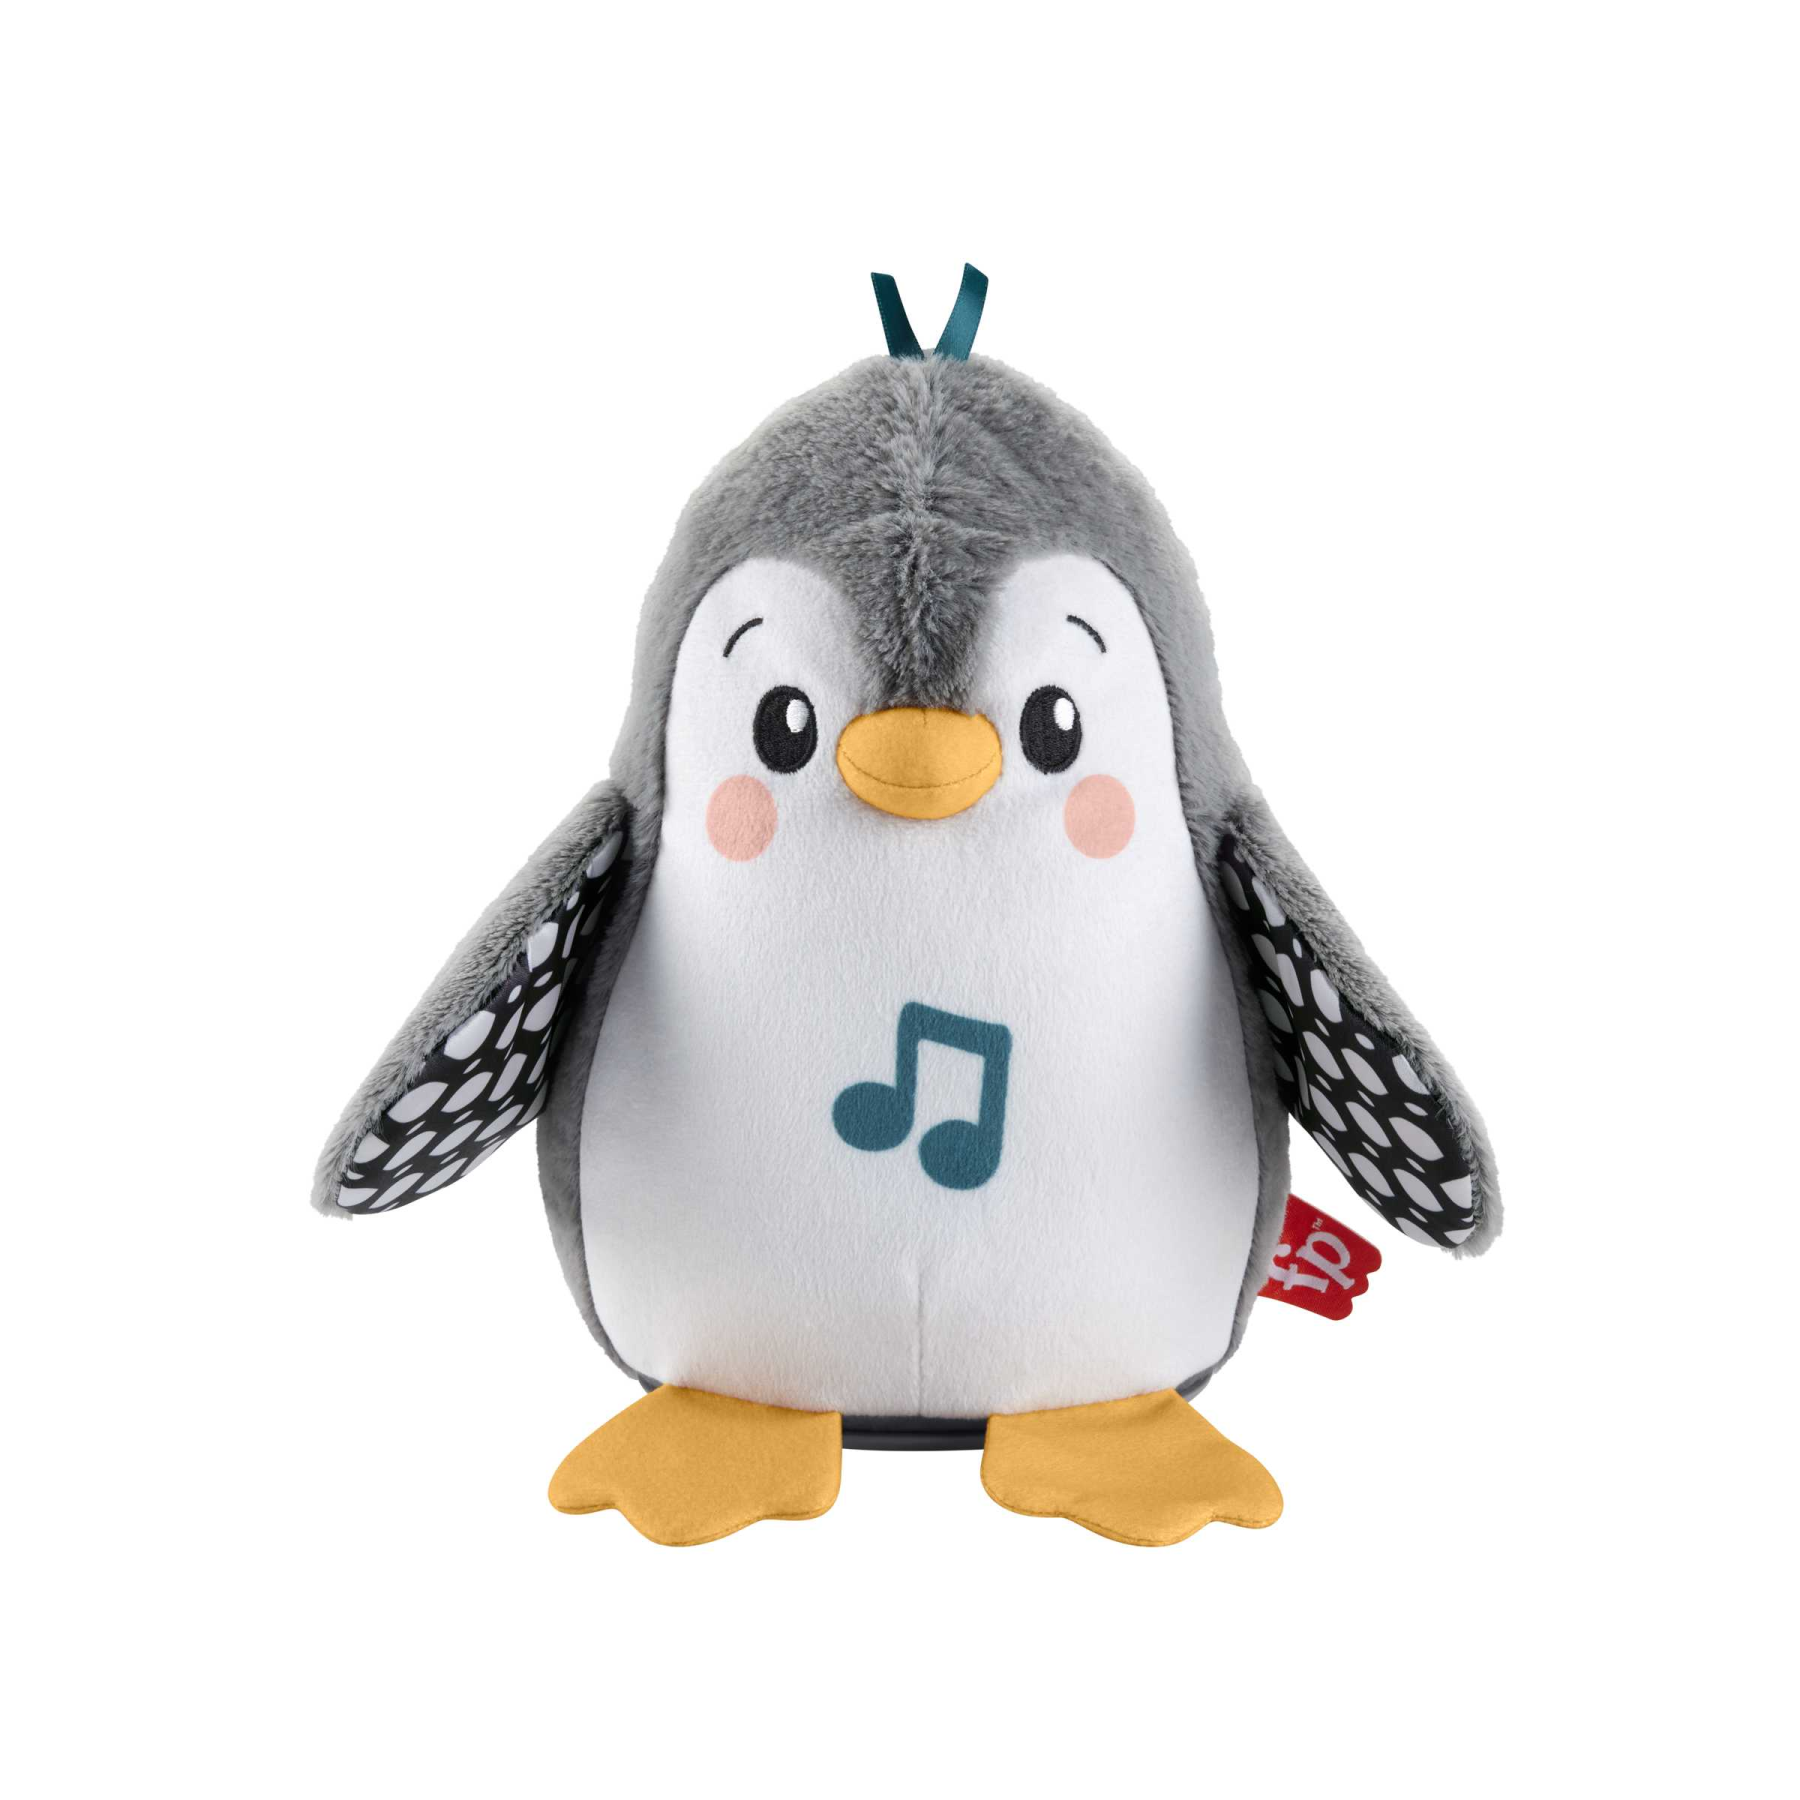 Fisher-price - pinguino dolci coccole, peluche sensoriale con musica e ali che si muovono, per il gioco interattivo da distesi sul pancino, 0+ anni, hnc10 - FISHER-PRICE